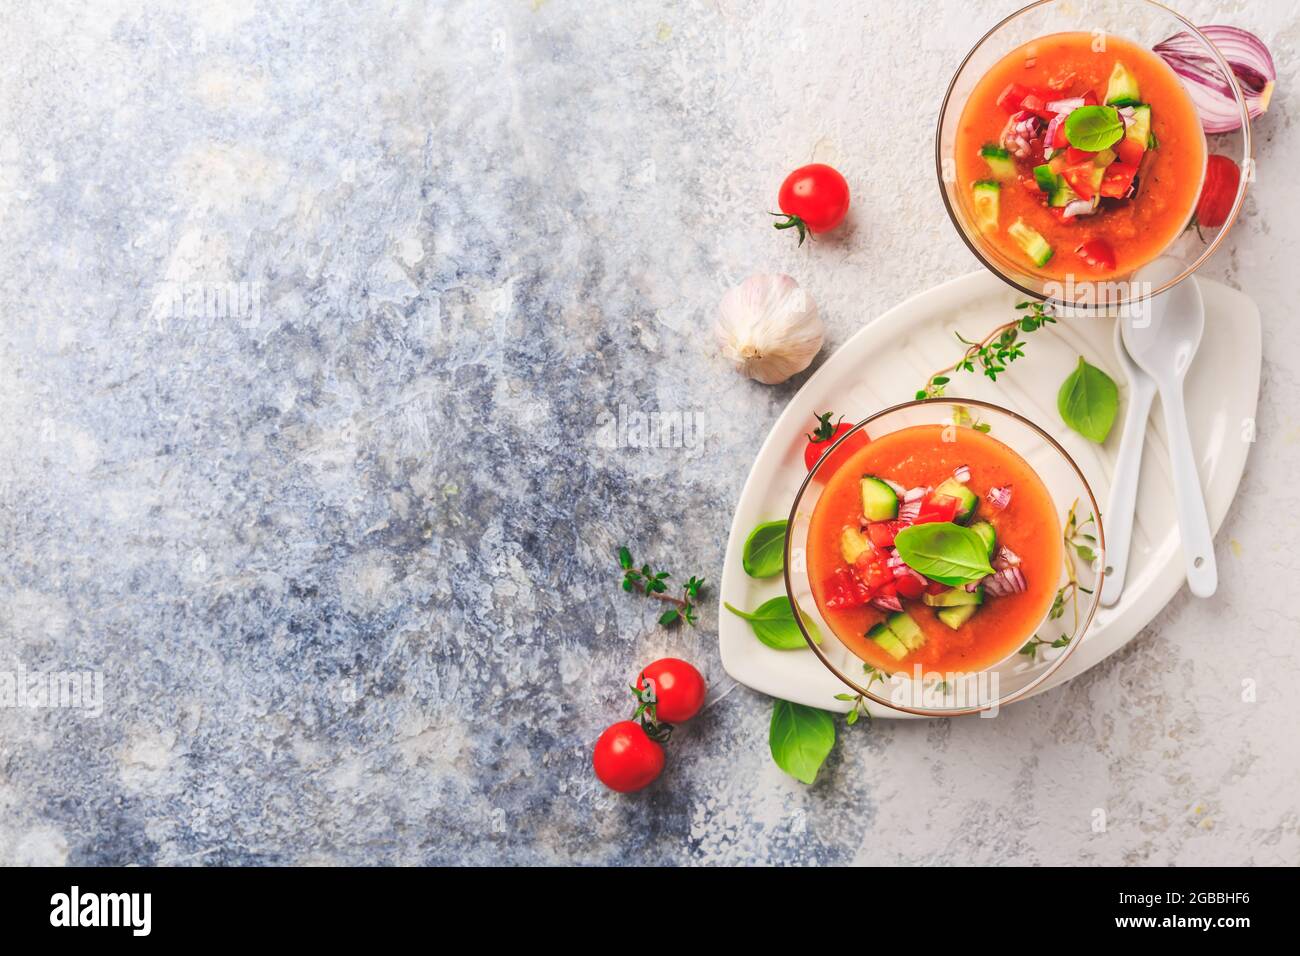 Hausgemachte spanische Gazpacho - kalte Gemüsesuppe mit Zutaten, erfrischend und kühl Stockfoto